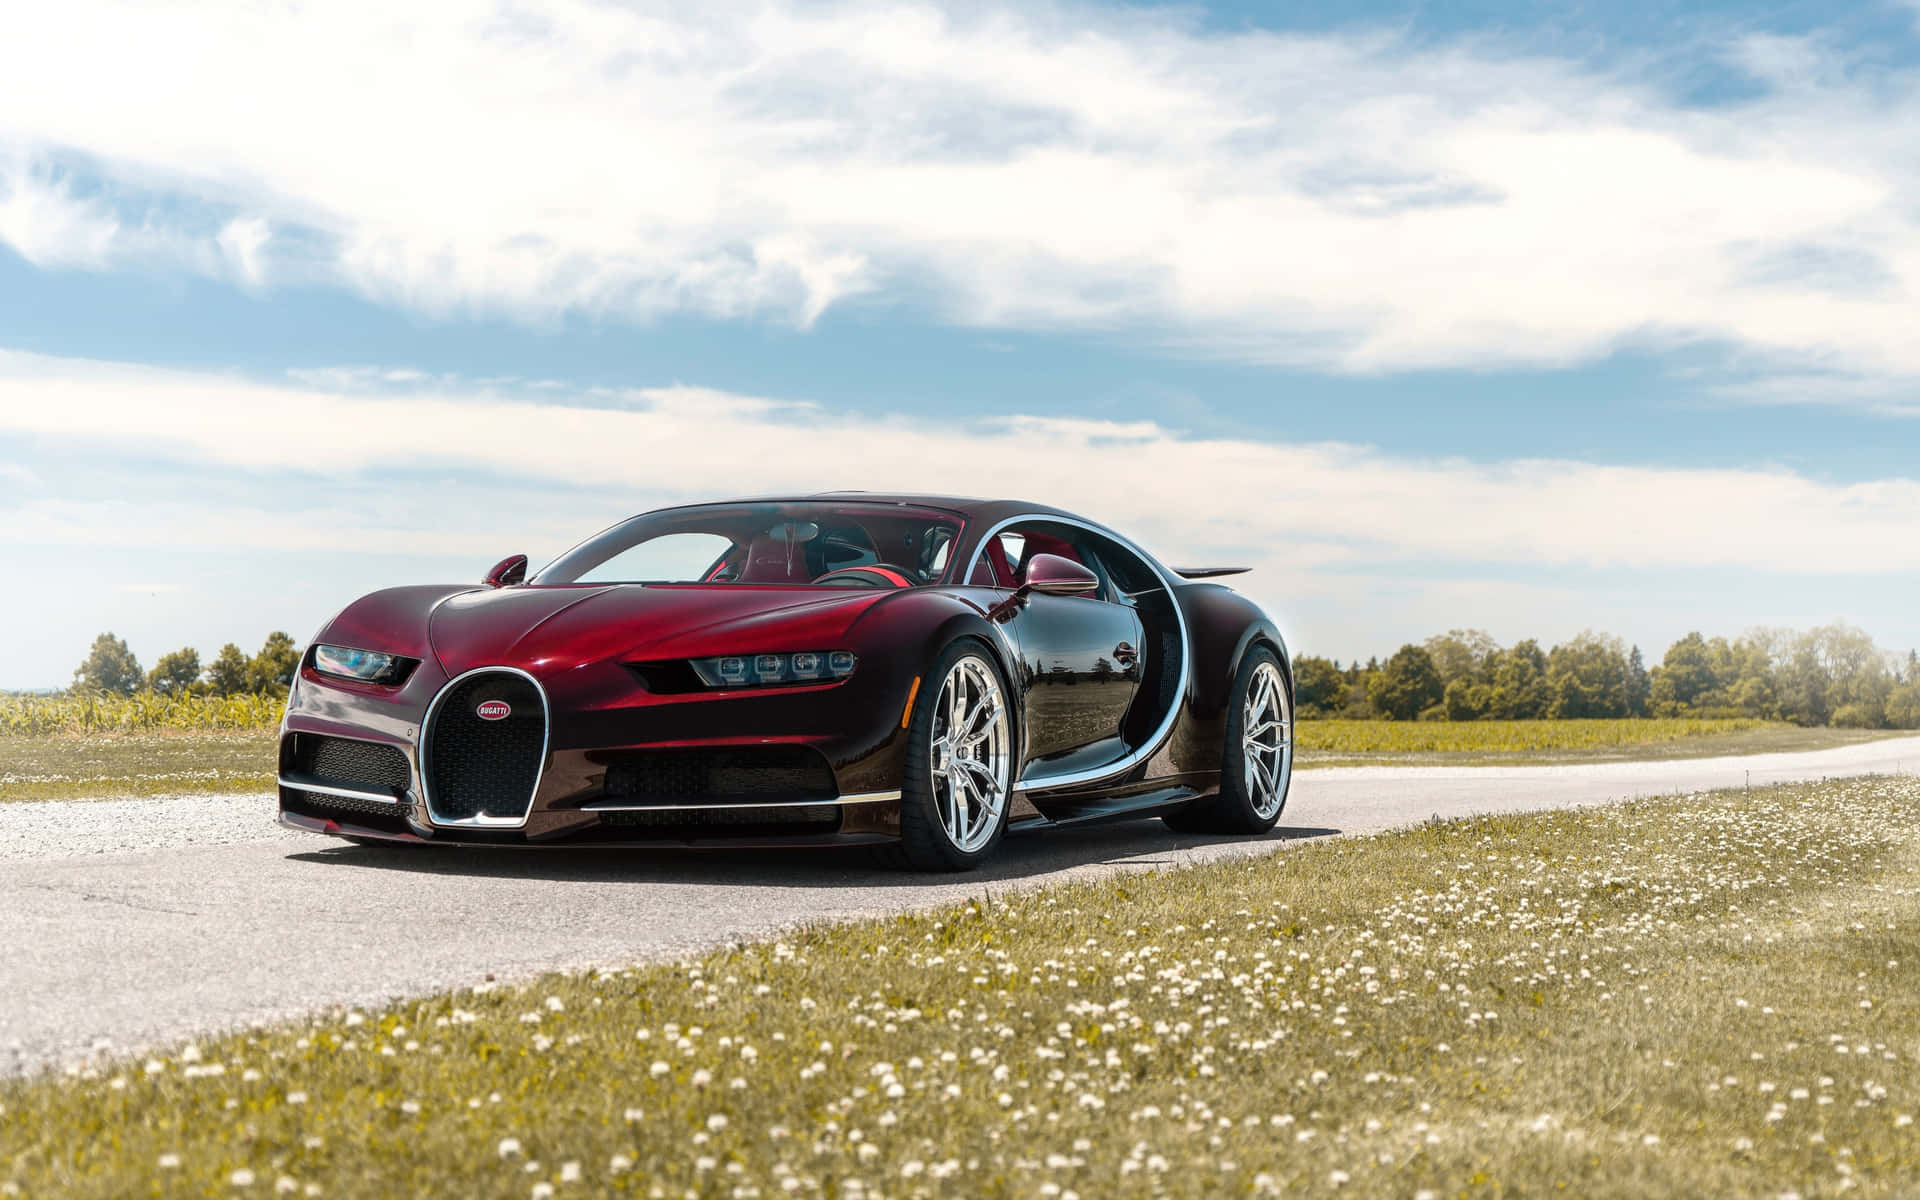 Elmejor Coche Bugatti: Velocidad, Estilo Y Lujo Se Combinan